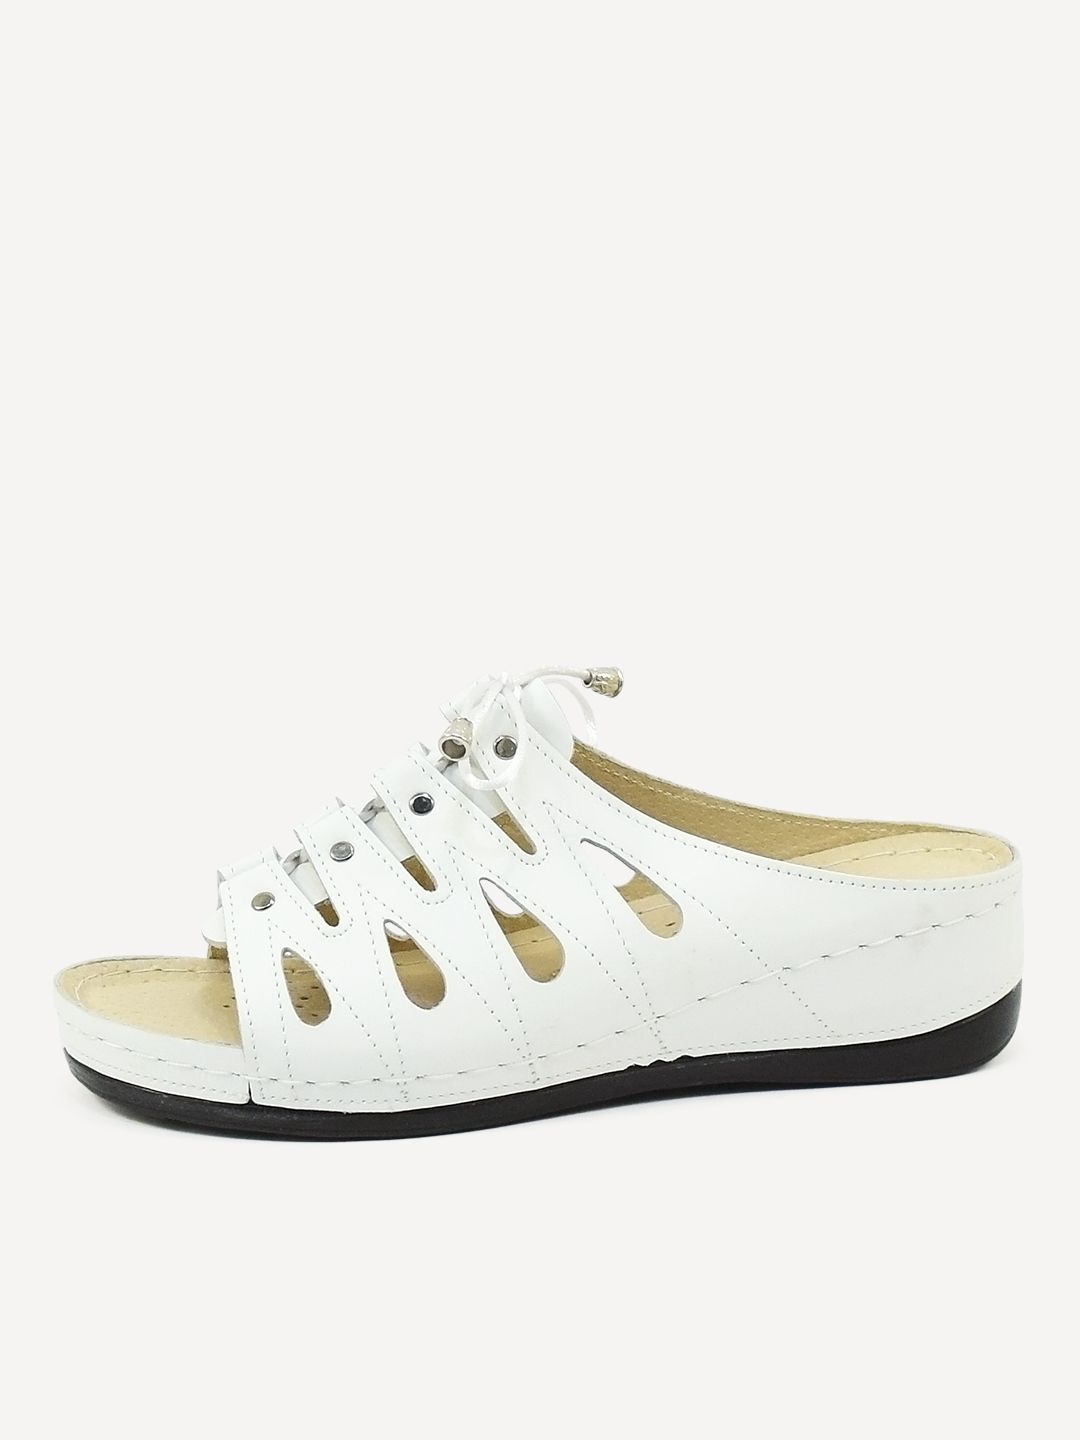 Сабо женские Melitta Shoes 008 белые 37 RU